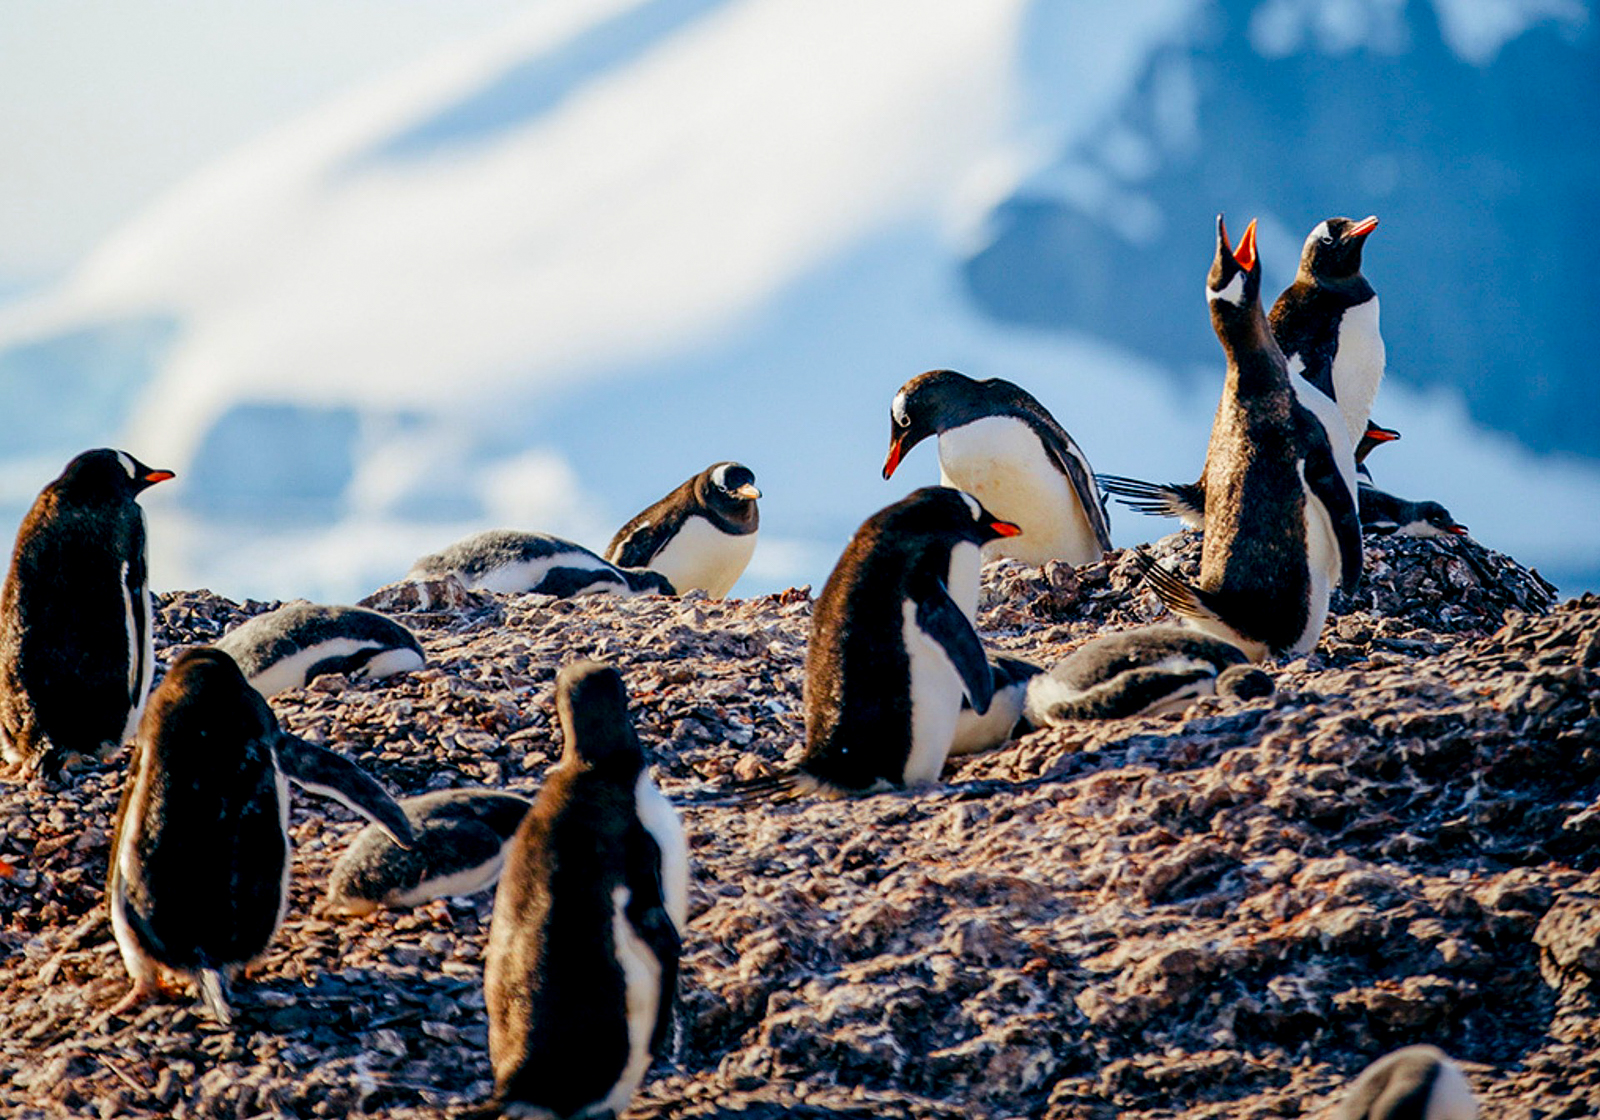 Gentoo penguins spotted in Antarctica